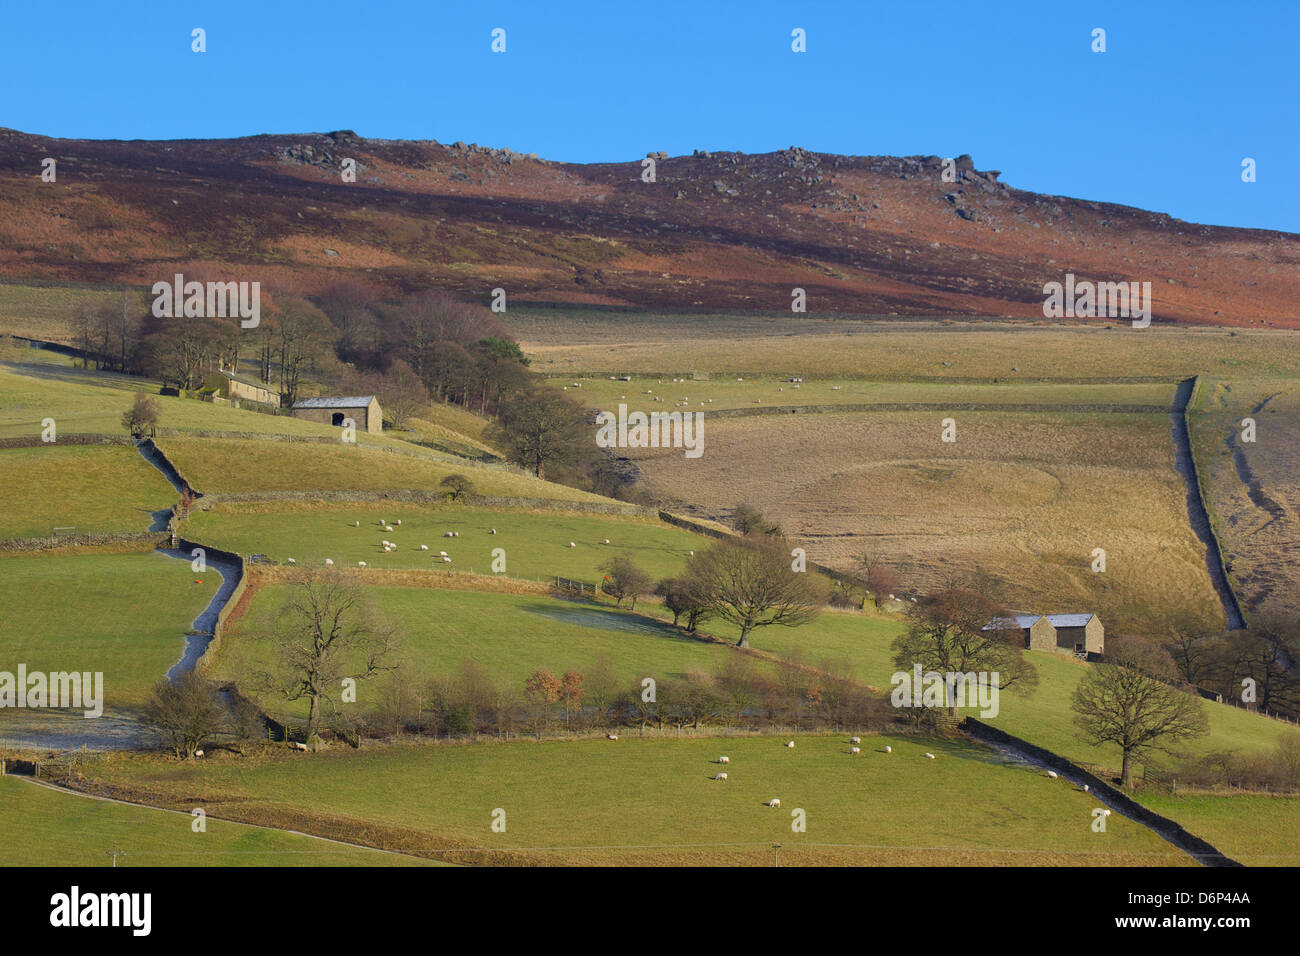 Les bâtiments agricoles et les murs, Derwent Valley, parc national de Peak District, Derbyshire, Angleterre, Royaume-Uni, Europe Banque D'Images